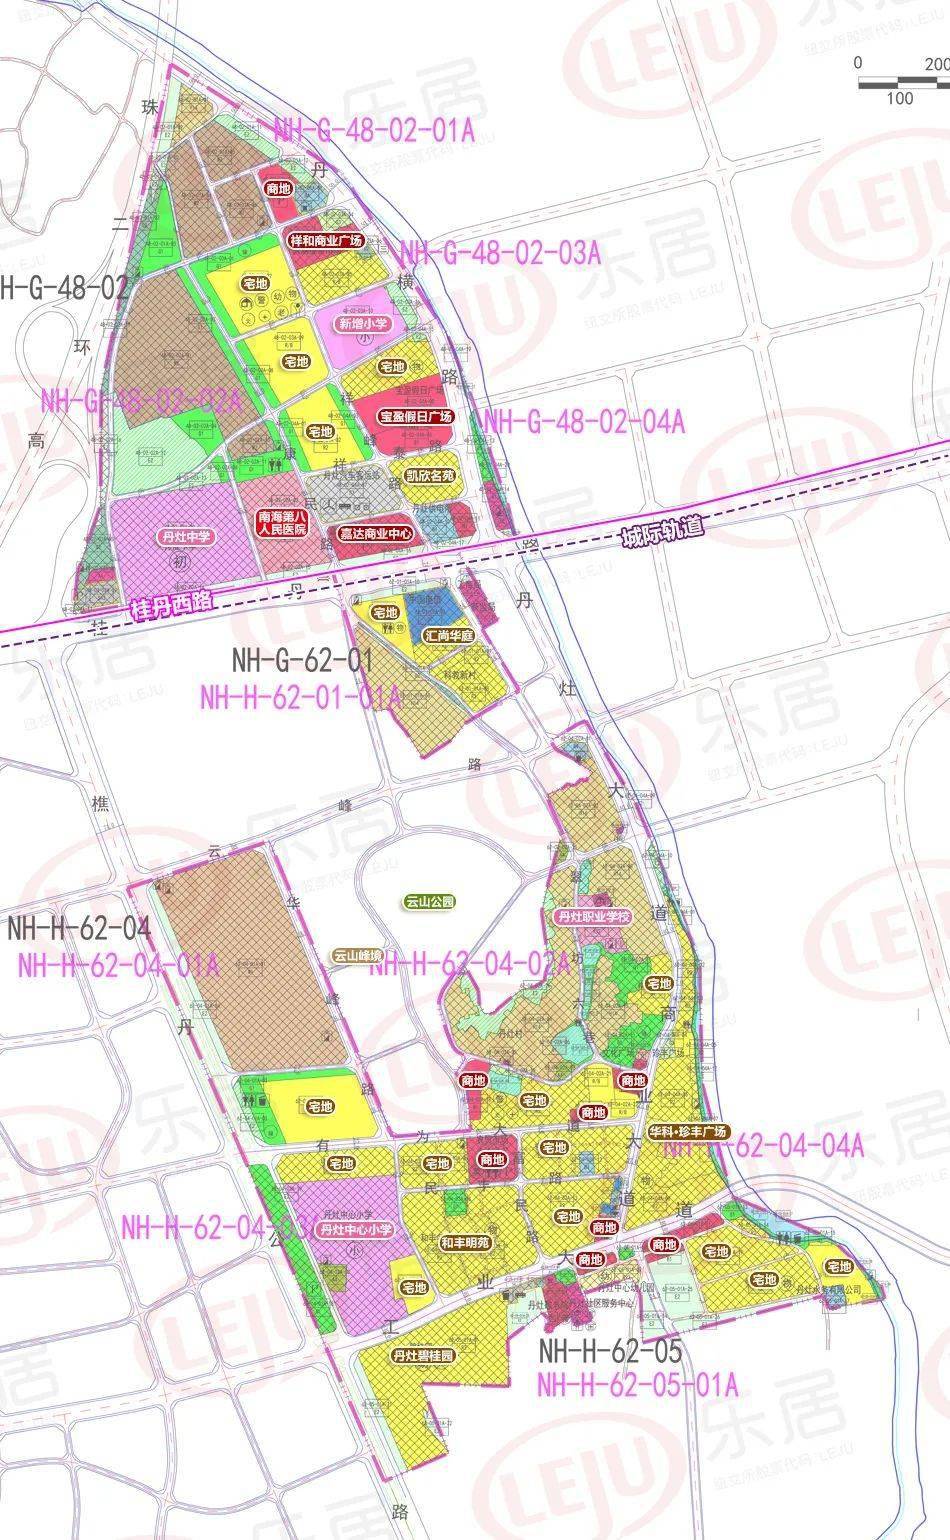 新控规新增了一所小学的规划,规划小学位于宝盈假日广场北侧附近